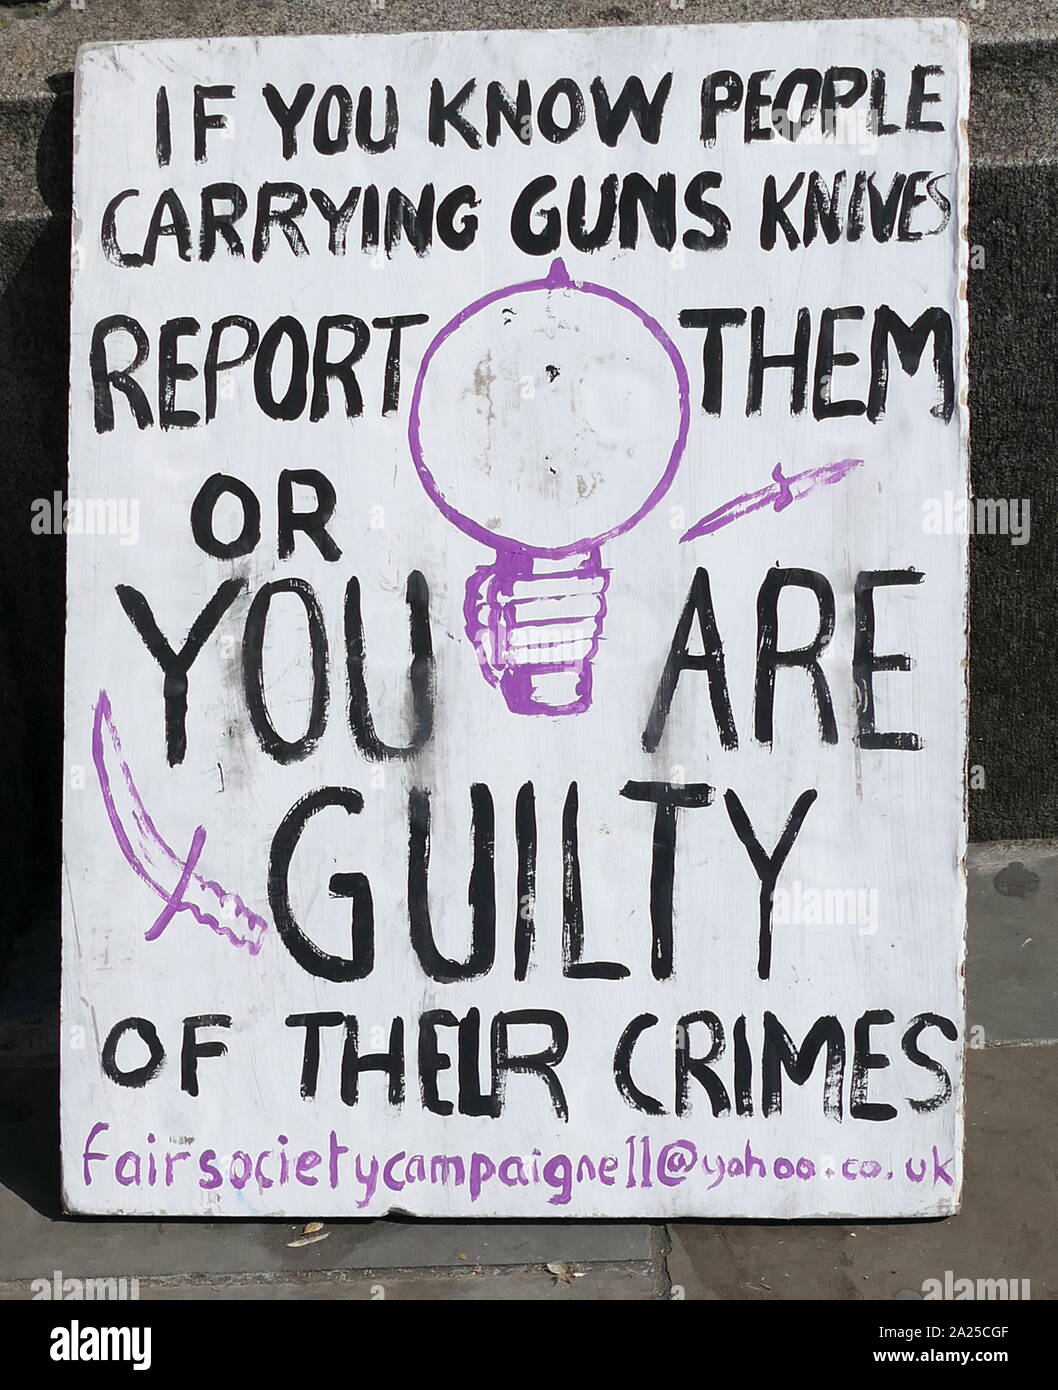 Anti-Messer und Pistole Kriminalität protest Plakat, angezeigt in der Nähe von Parlament in London, April 2019. Stockfoto